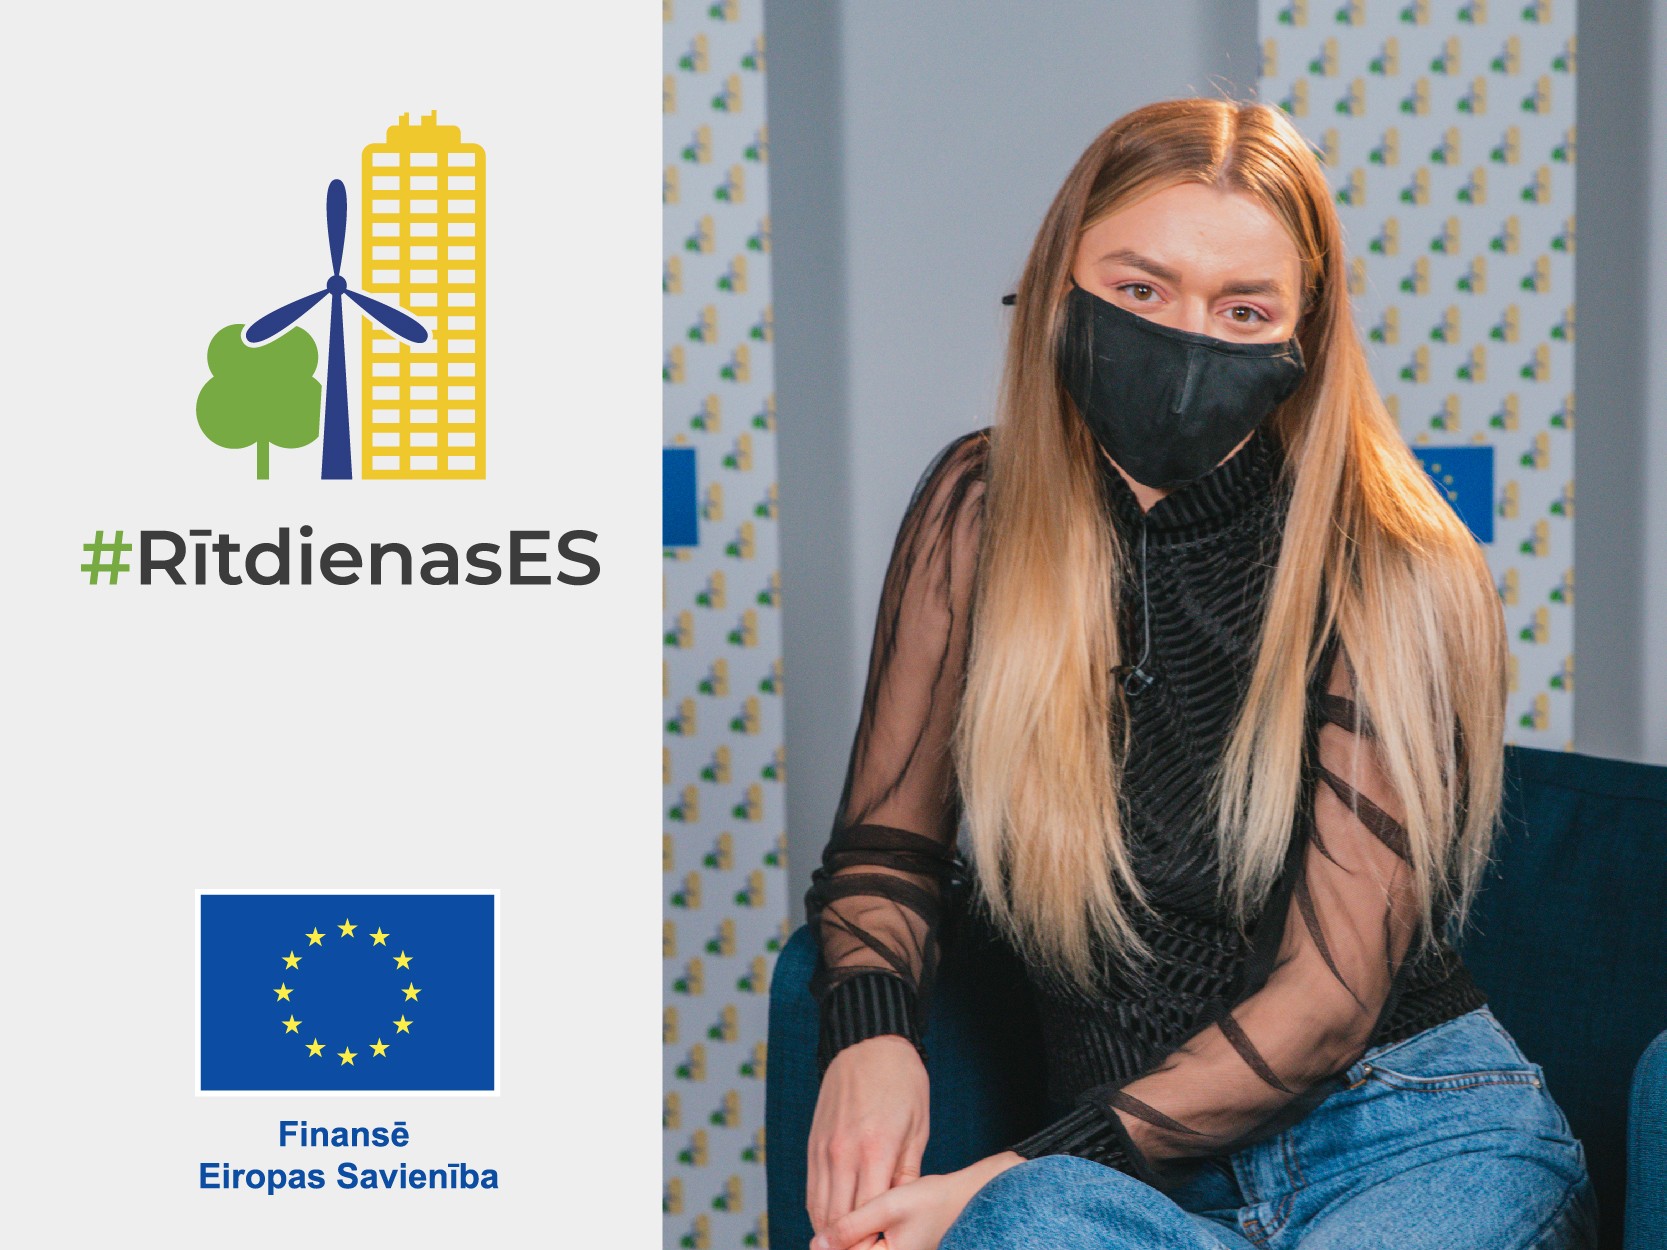 Rītdienas ES | Sindija Bokāne | Kā apvienot videi draudzīgus un digitālus risinājumus?